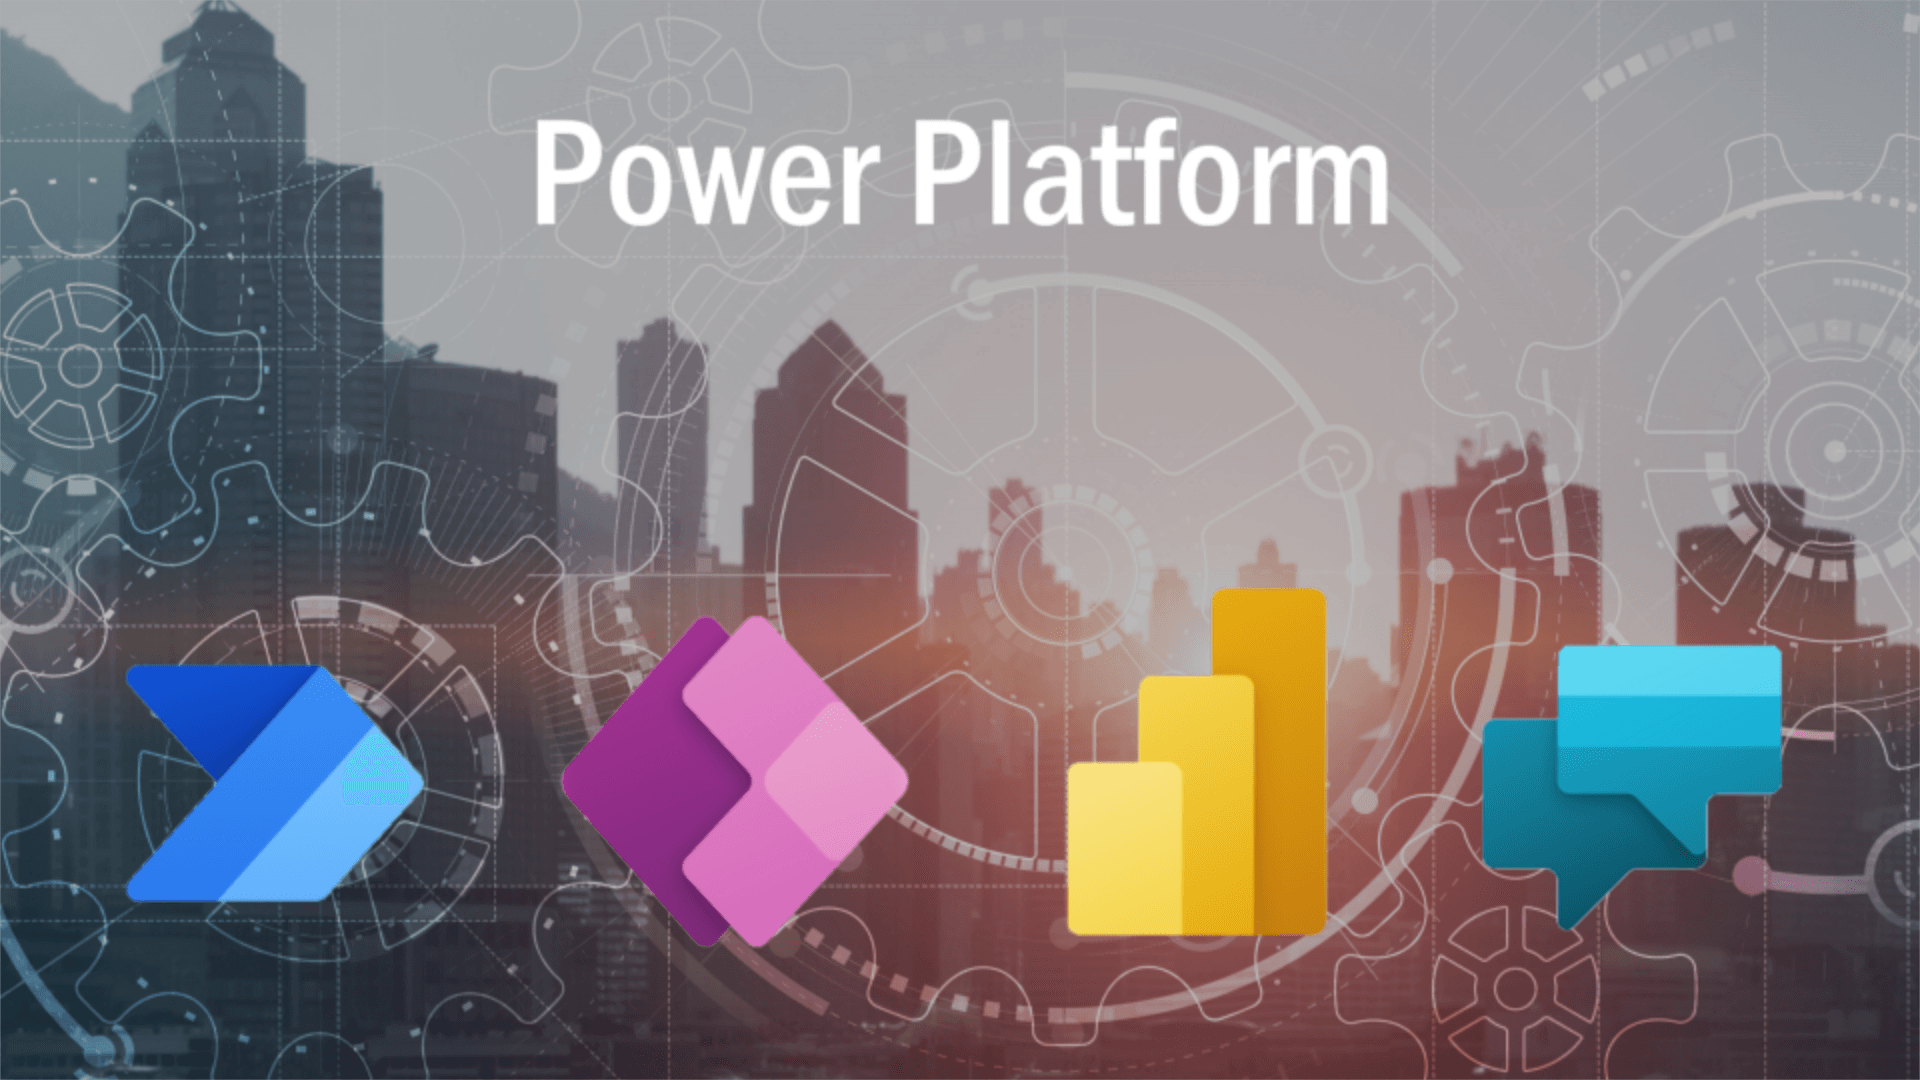 Skyline van een stad met op de voorgrond de logo's van de Power Platform apps